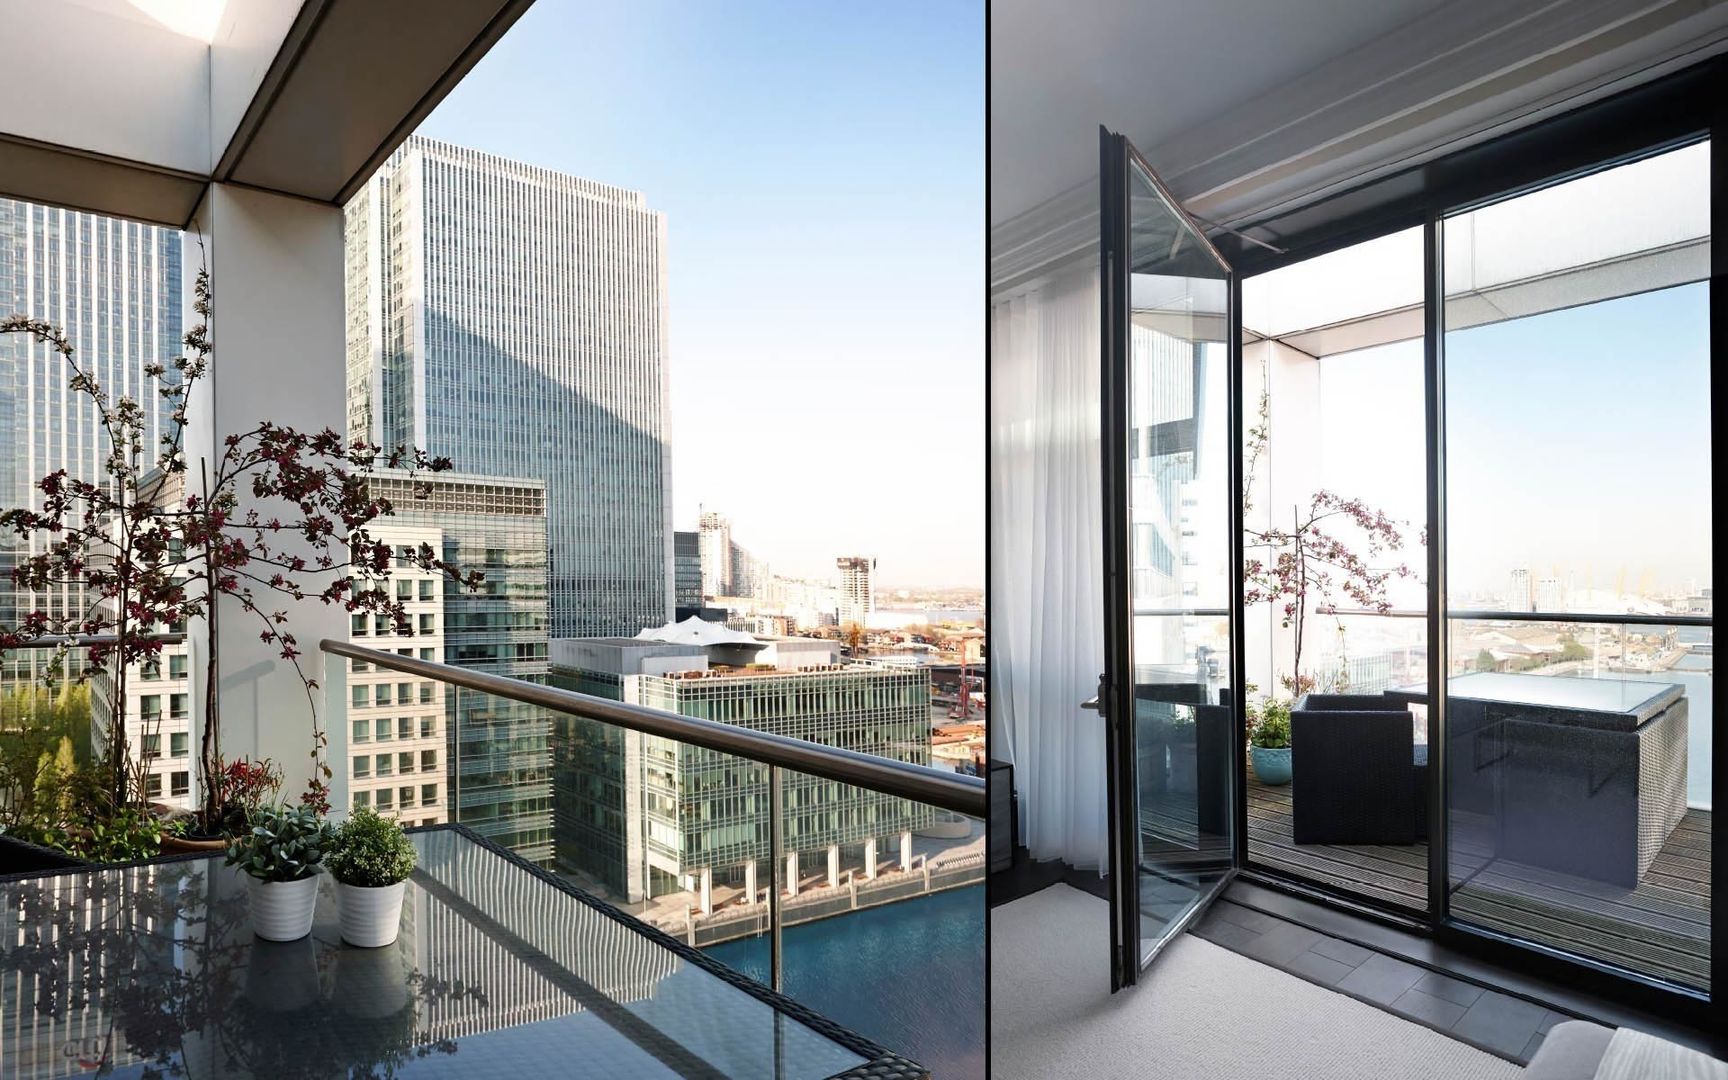 Luxury Penthouse Apartment: Discovery Dock, Boscolo Boscolo Varandas, alpendres e terraços modernos Acessórios e decoração